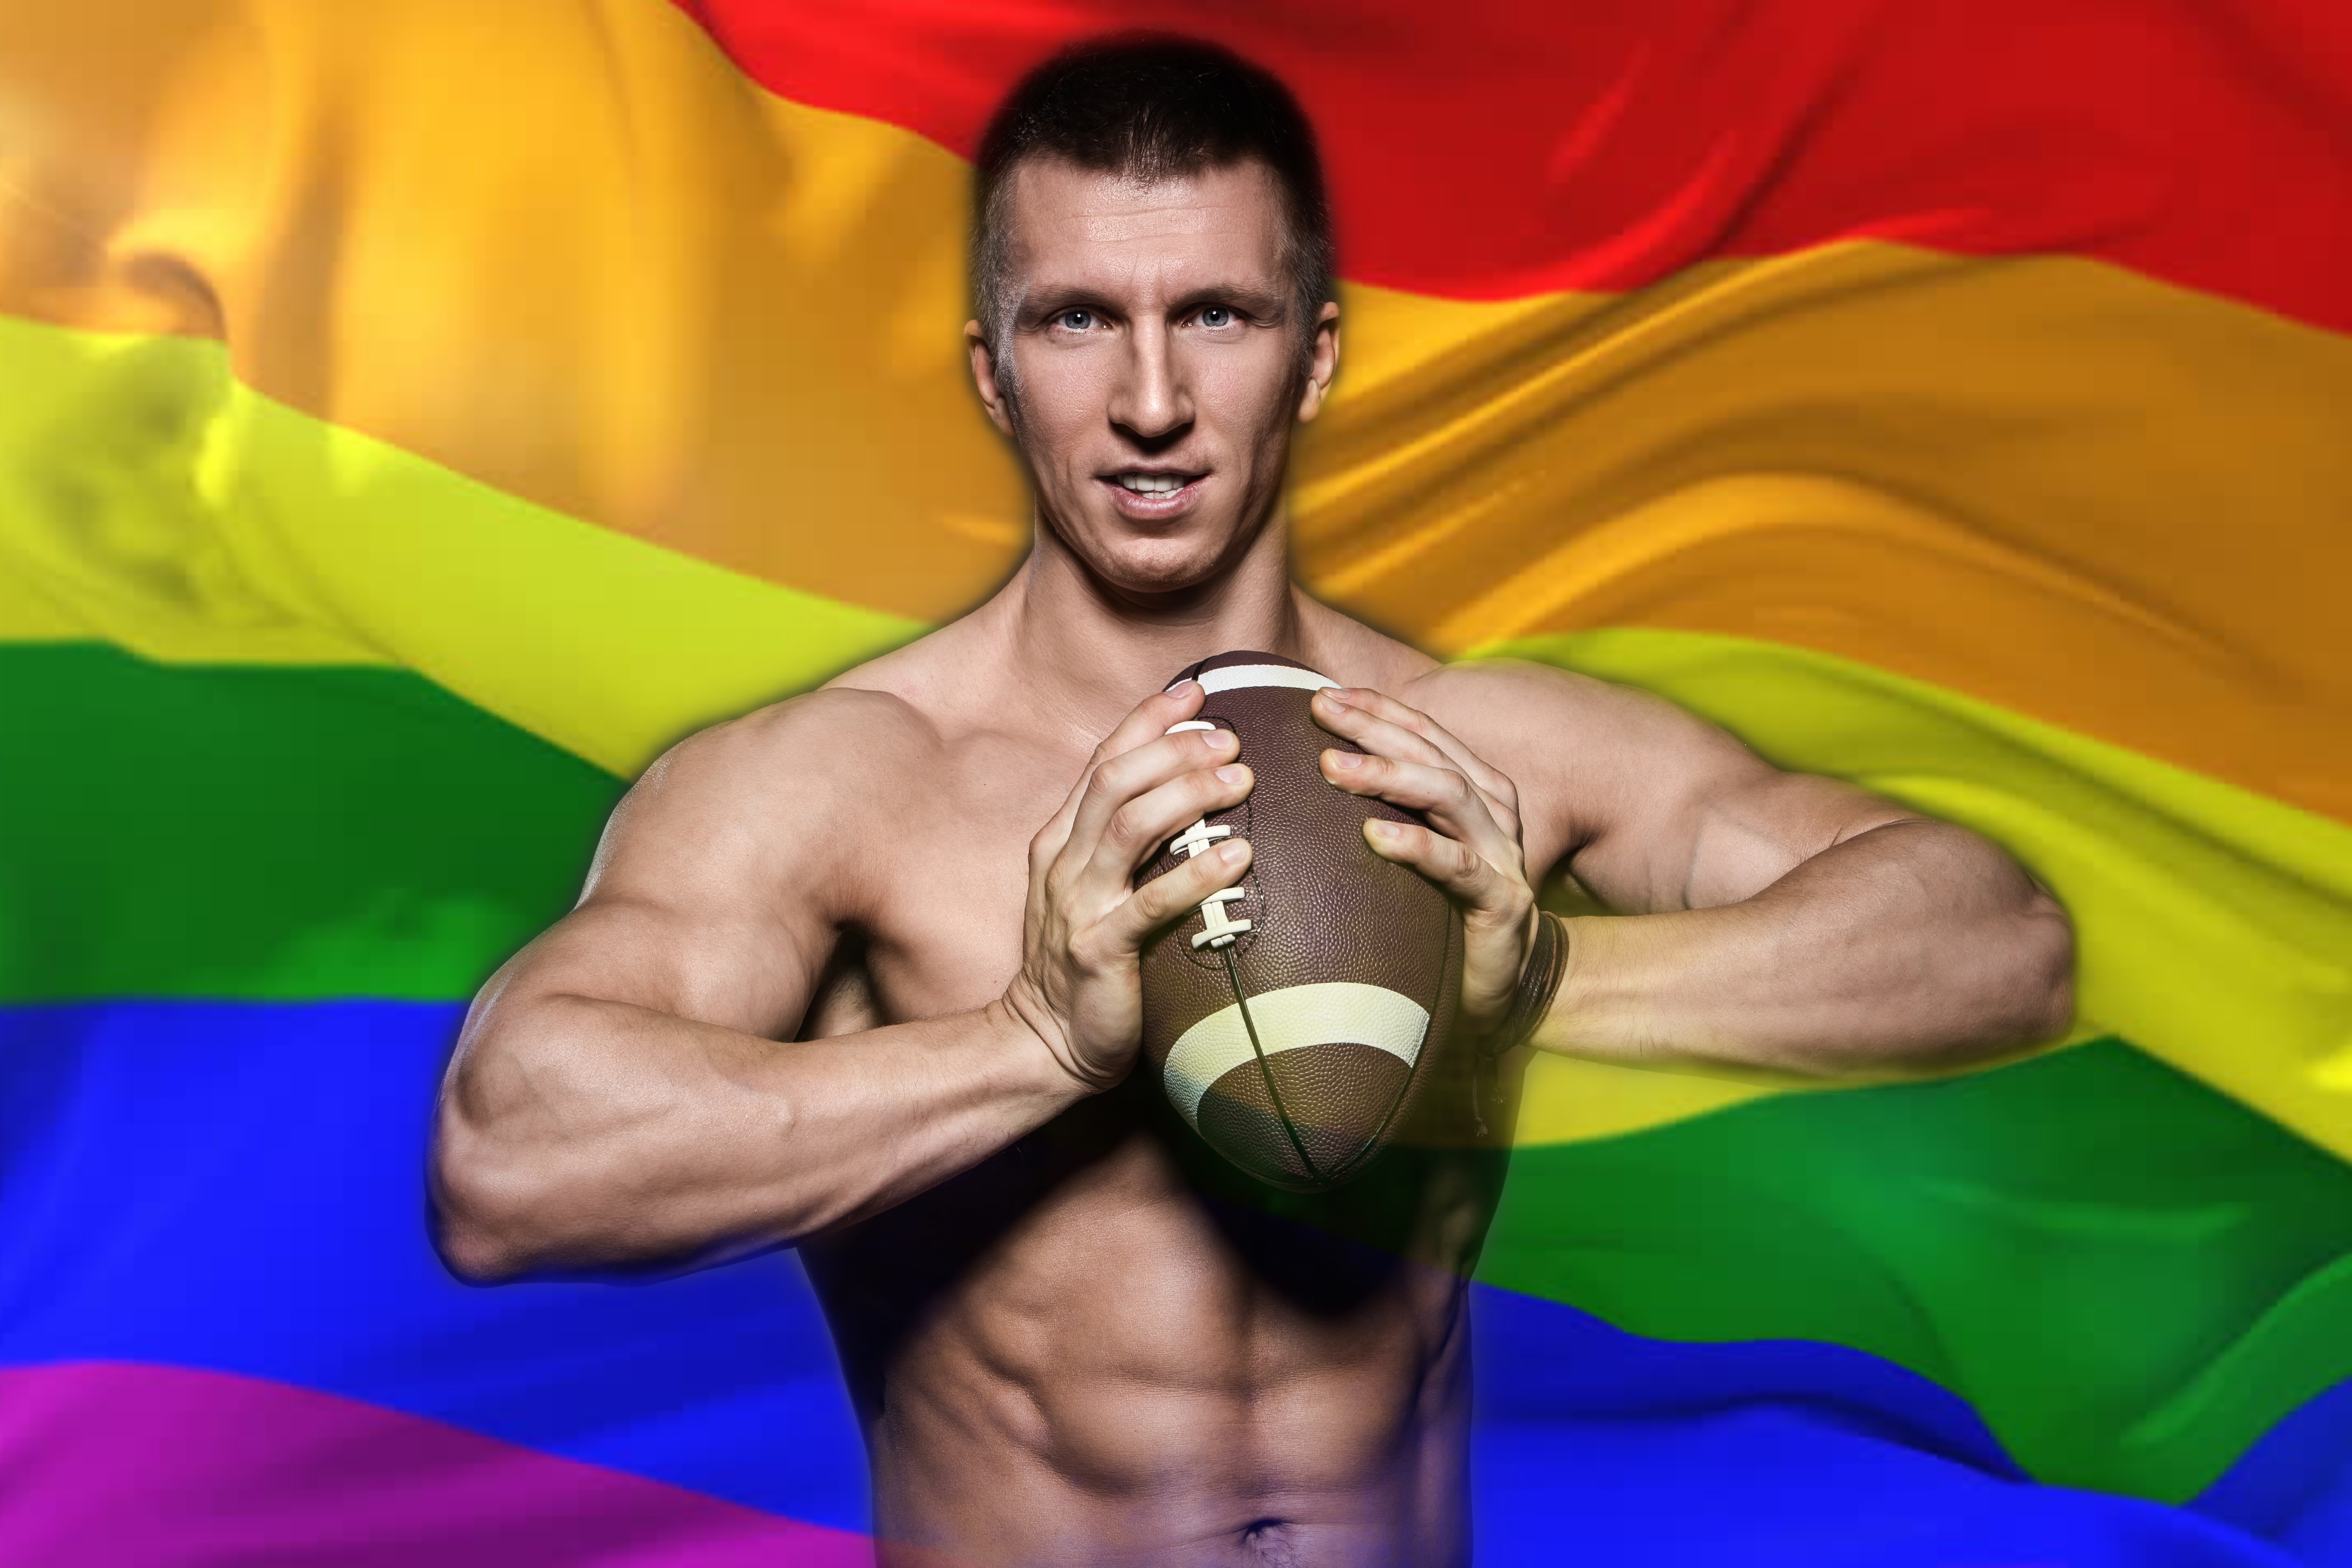 Este jugador de la NFL dice que hay al menos un gay en cada equipo de